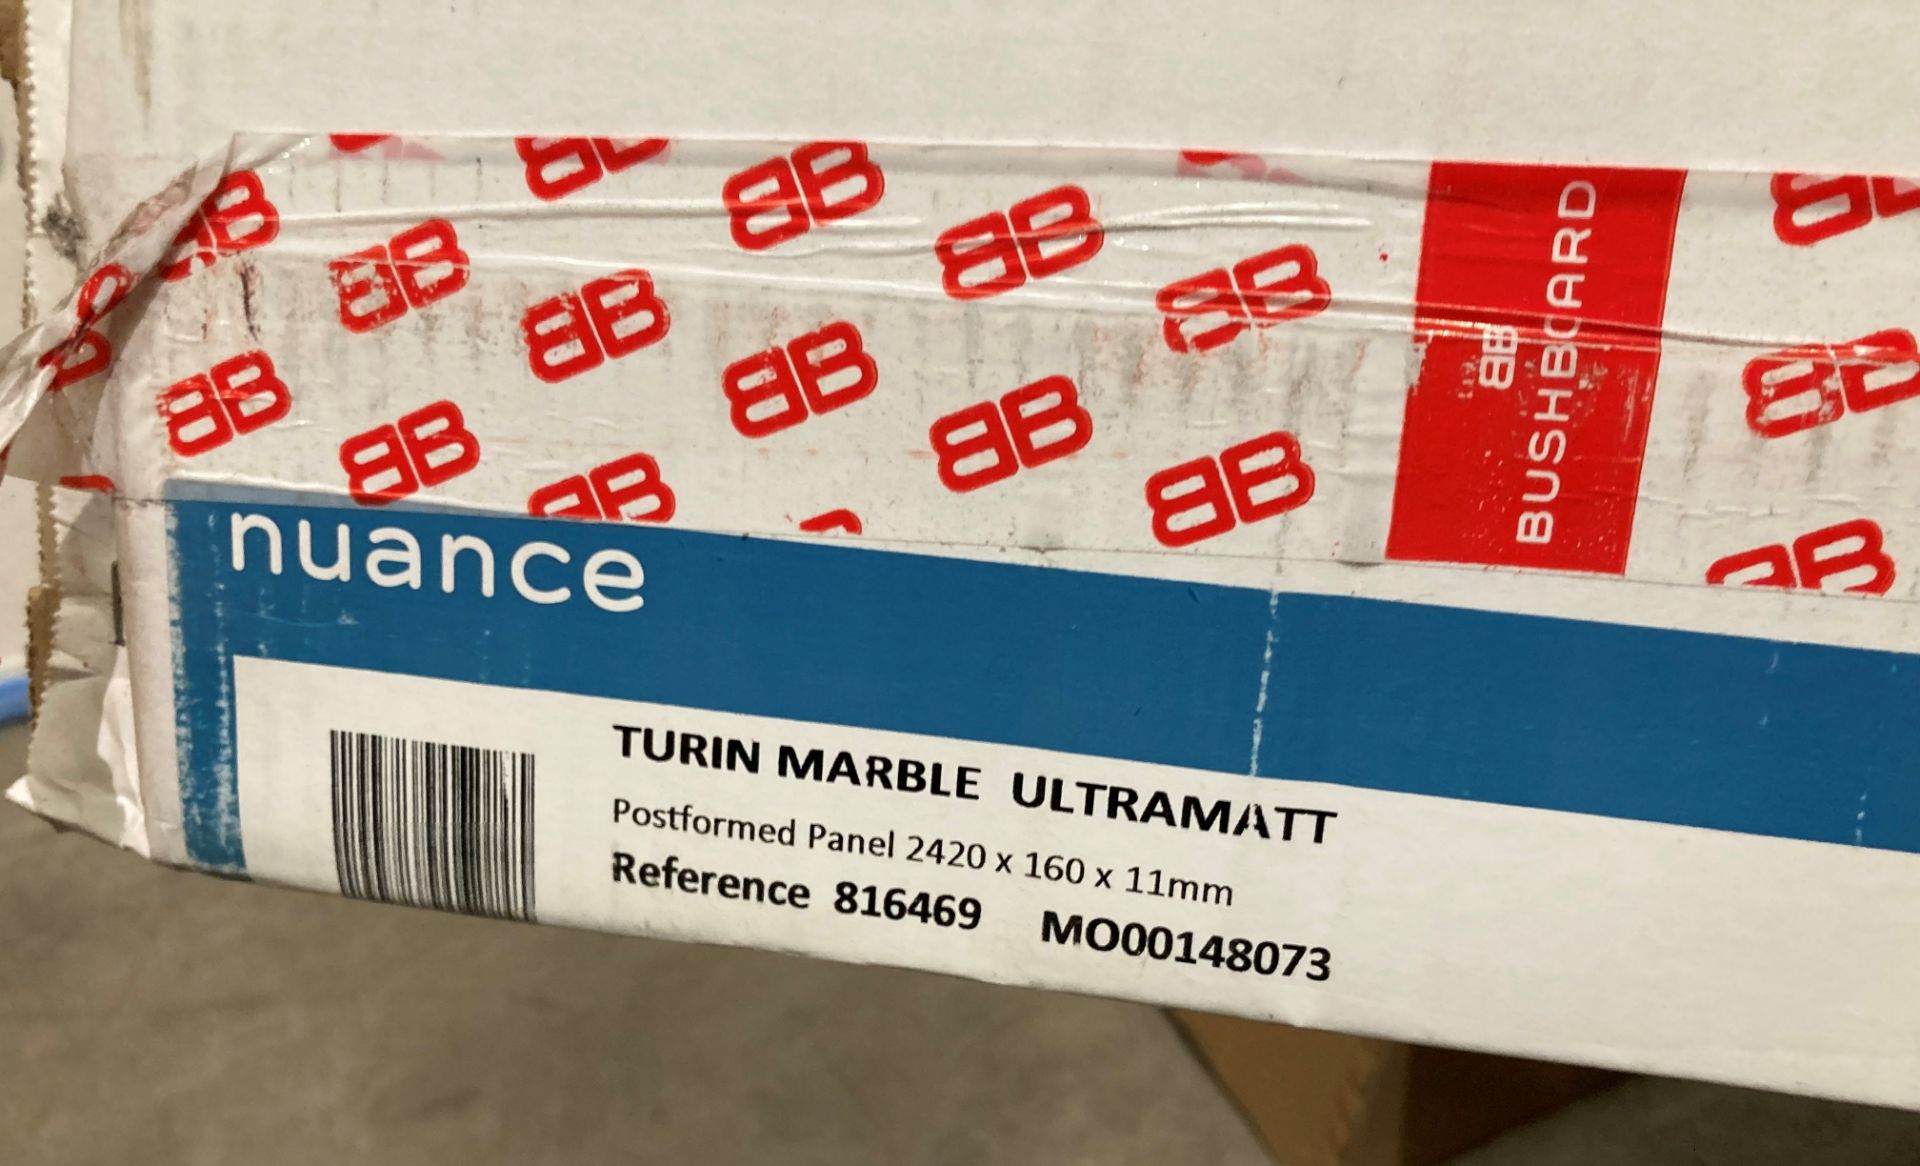 3 x Nuance Turin marble ultramatt preformed panel 2420mmx 160mm x 11mm and 1 2420mm x 580mm x11mm